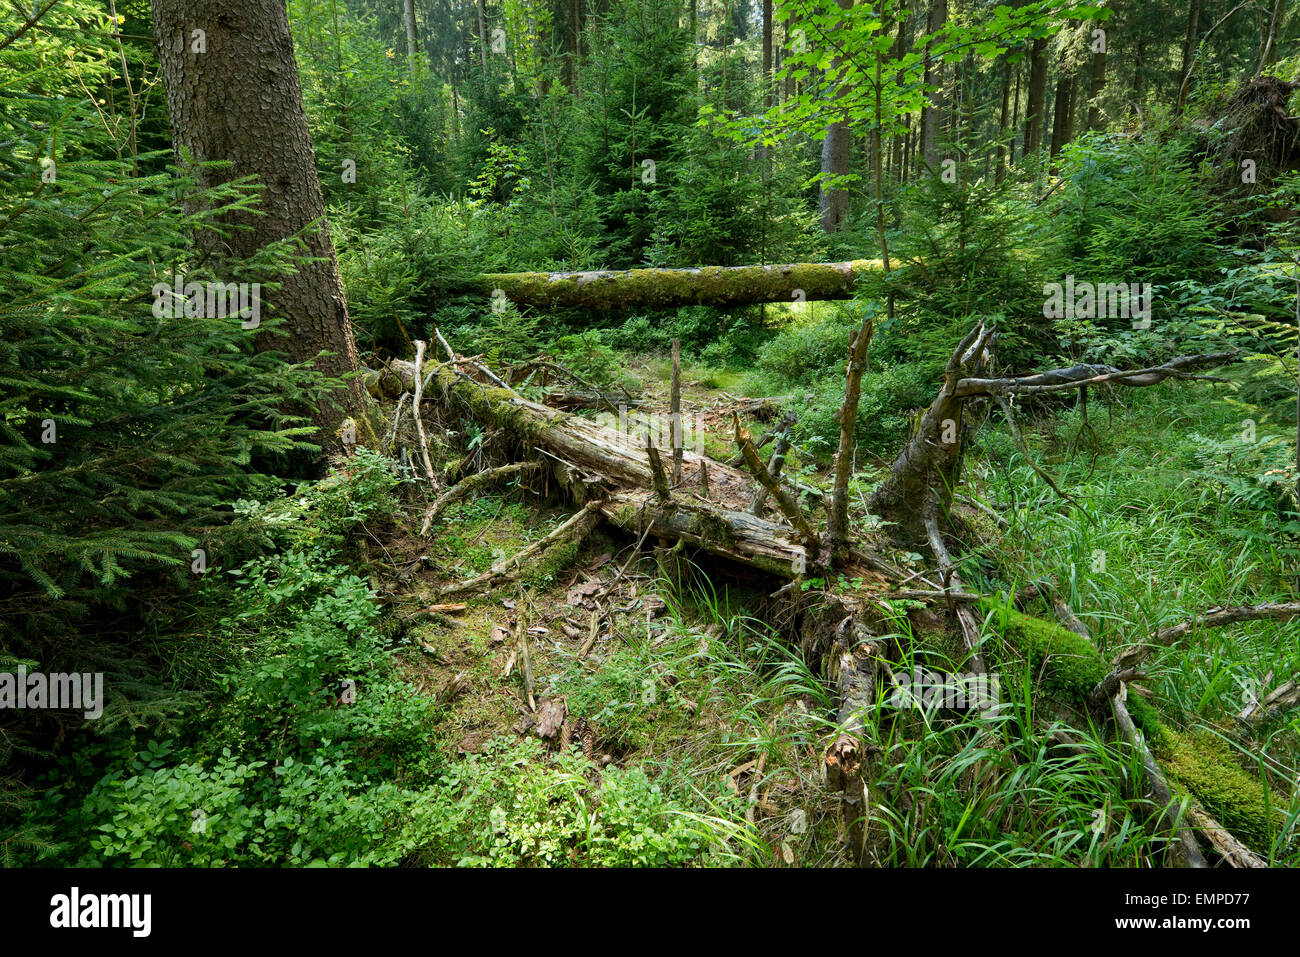 Bois mort dans la forêt d'épinettes primitive, l'épinette de Norvège (Picea abies), Parc National de Harz, Basse-Saxe, Allemagne Banque D'Images